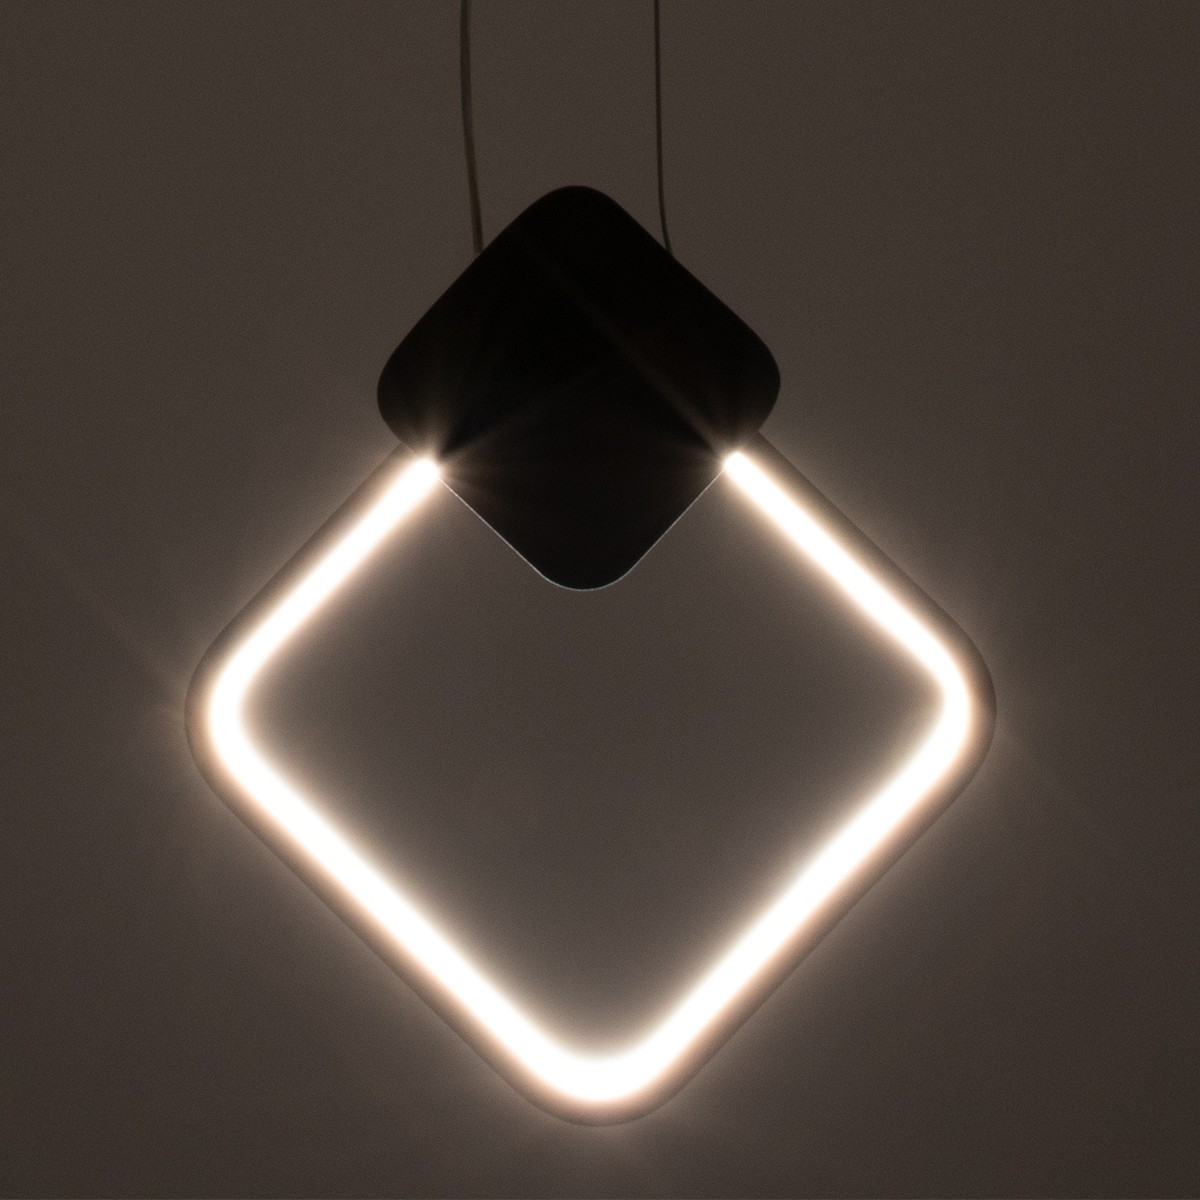 LED Κρεμαστό Φωτιστικό Οροφής Μαύρο Design MARY 12W Εναλλαγή Φωτισμού μέσω Διακόπτη On/Off Μ20 x Π2.3 x Υ28.5cm 61082